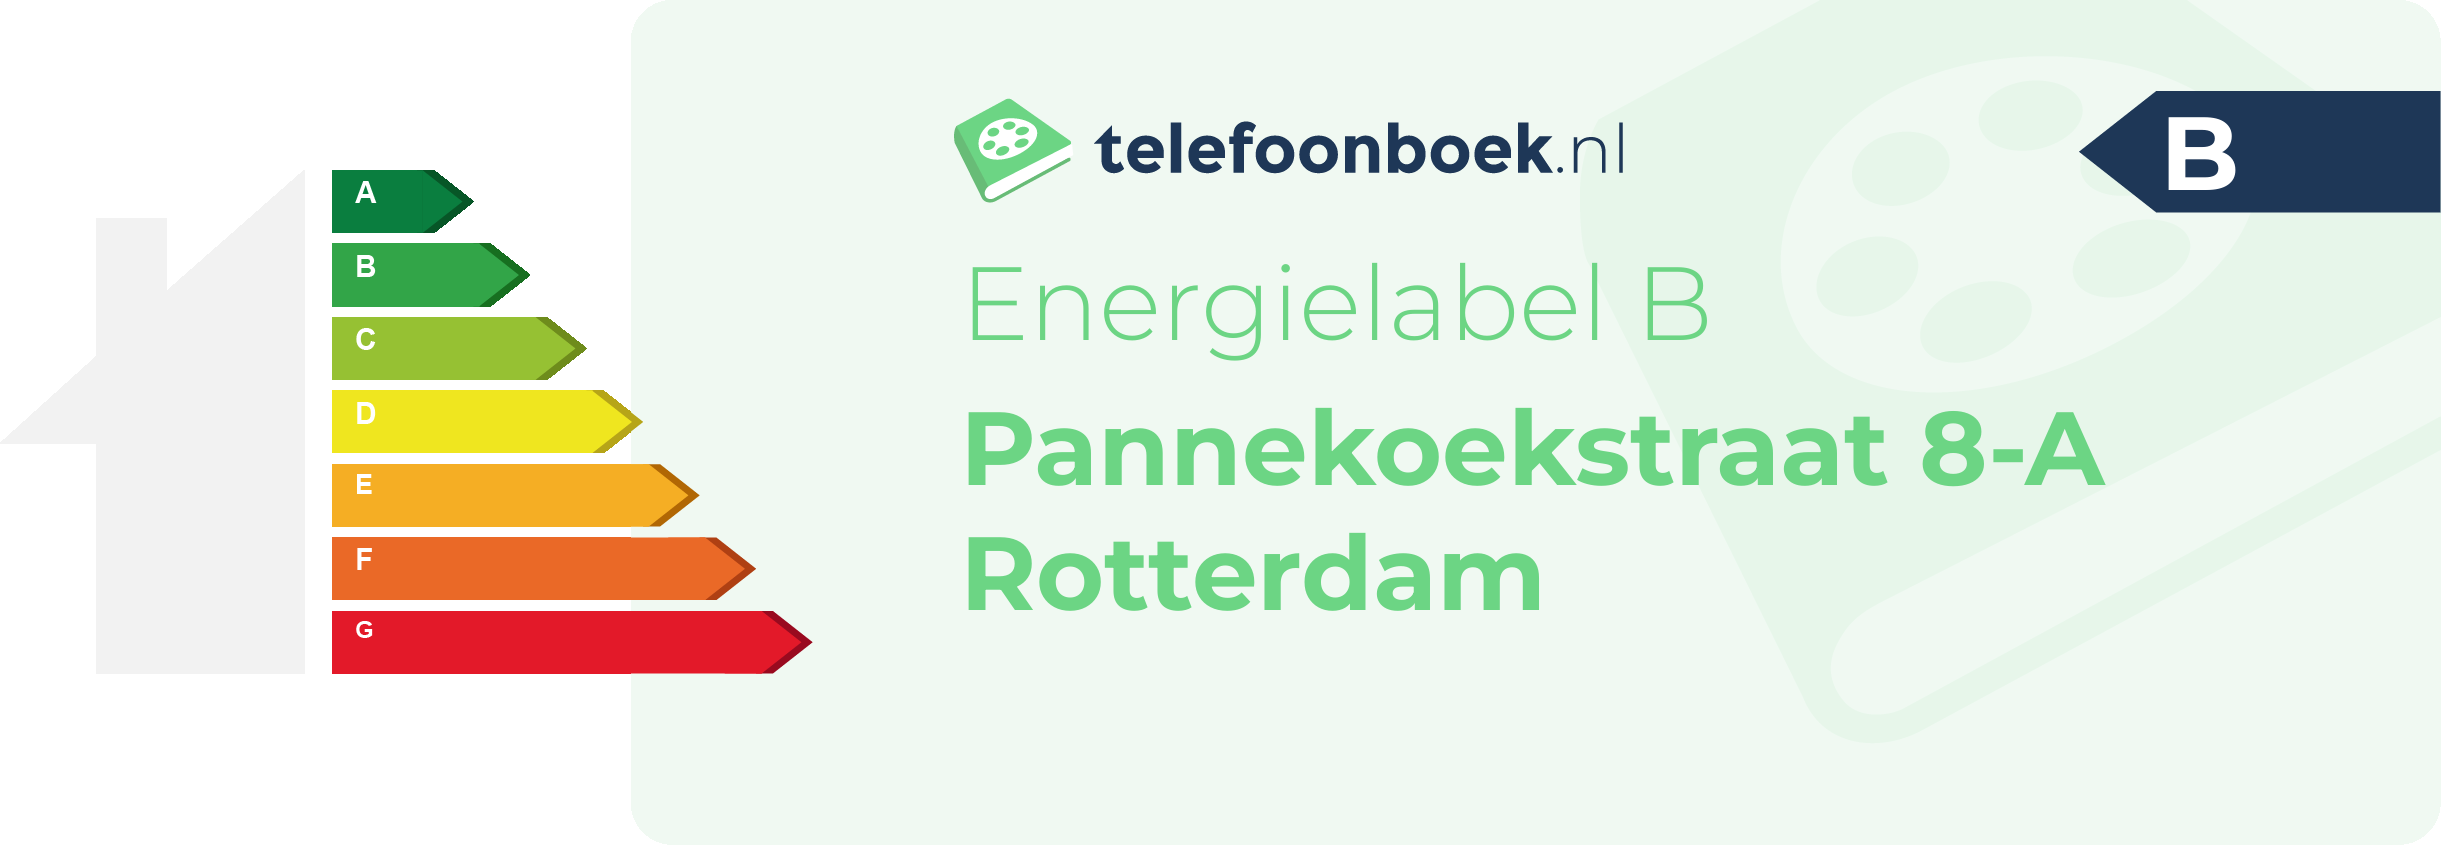 Energielabel Pannekoekstraat 8-A Rotterdam